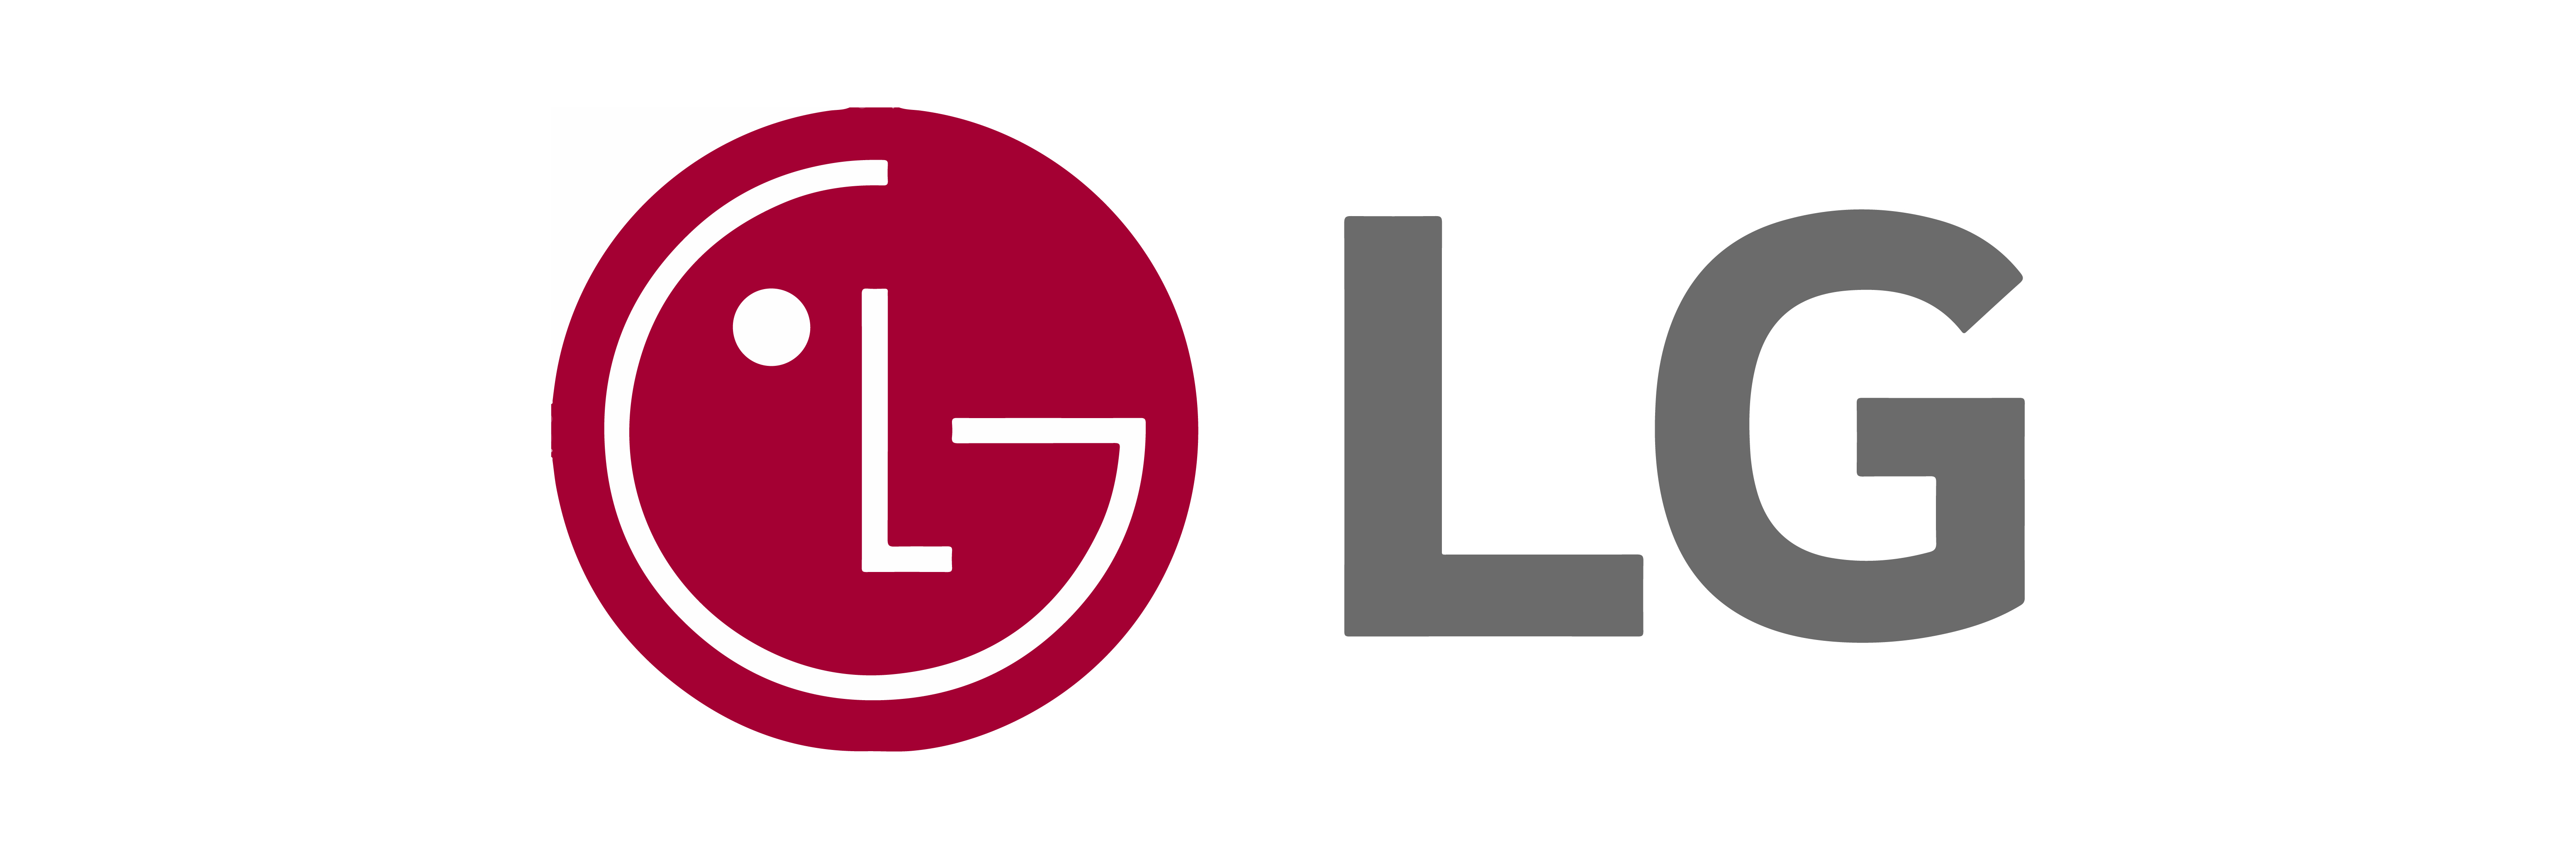 Lg-brandlogo-100-2021